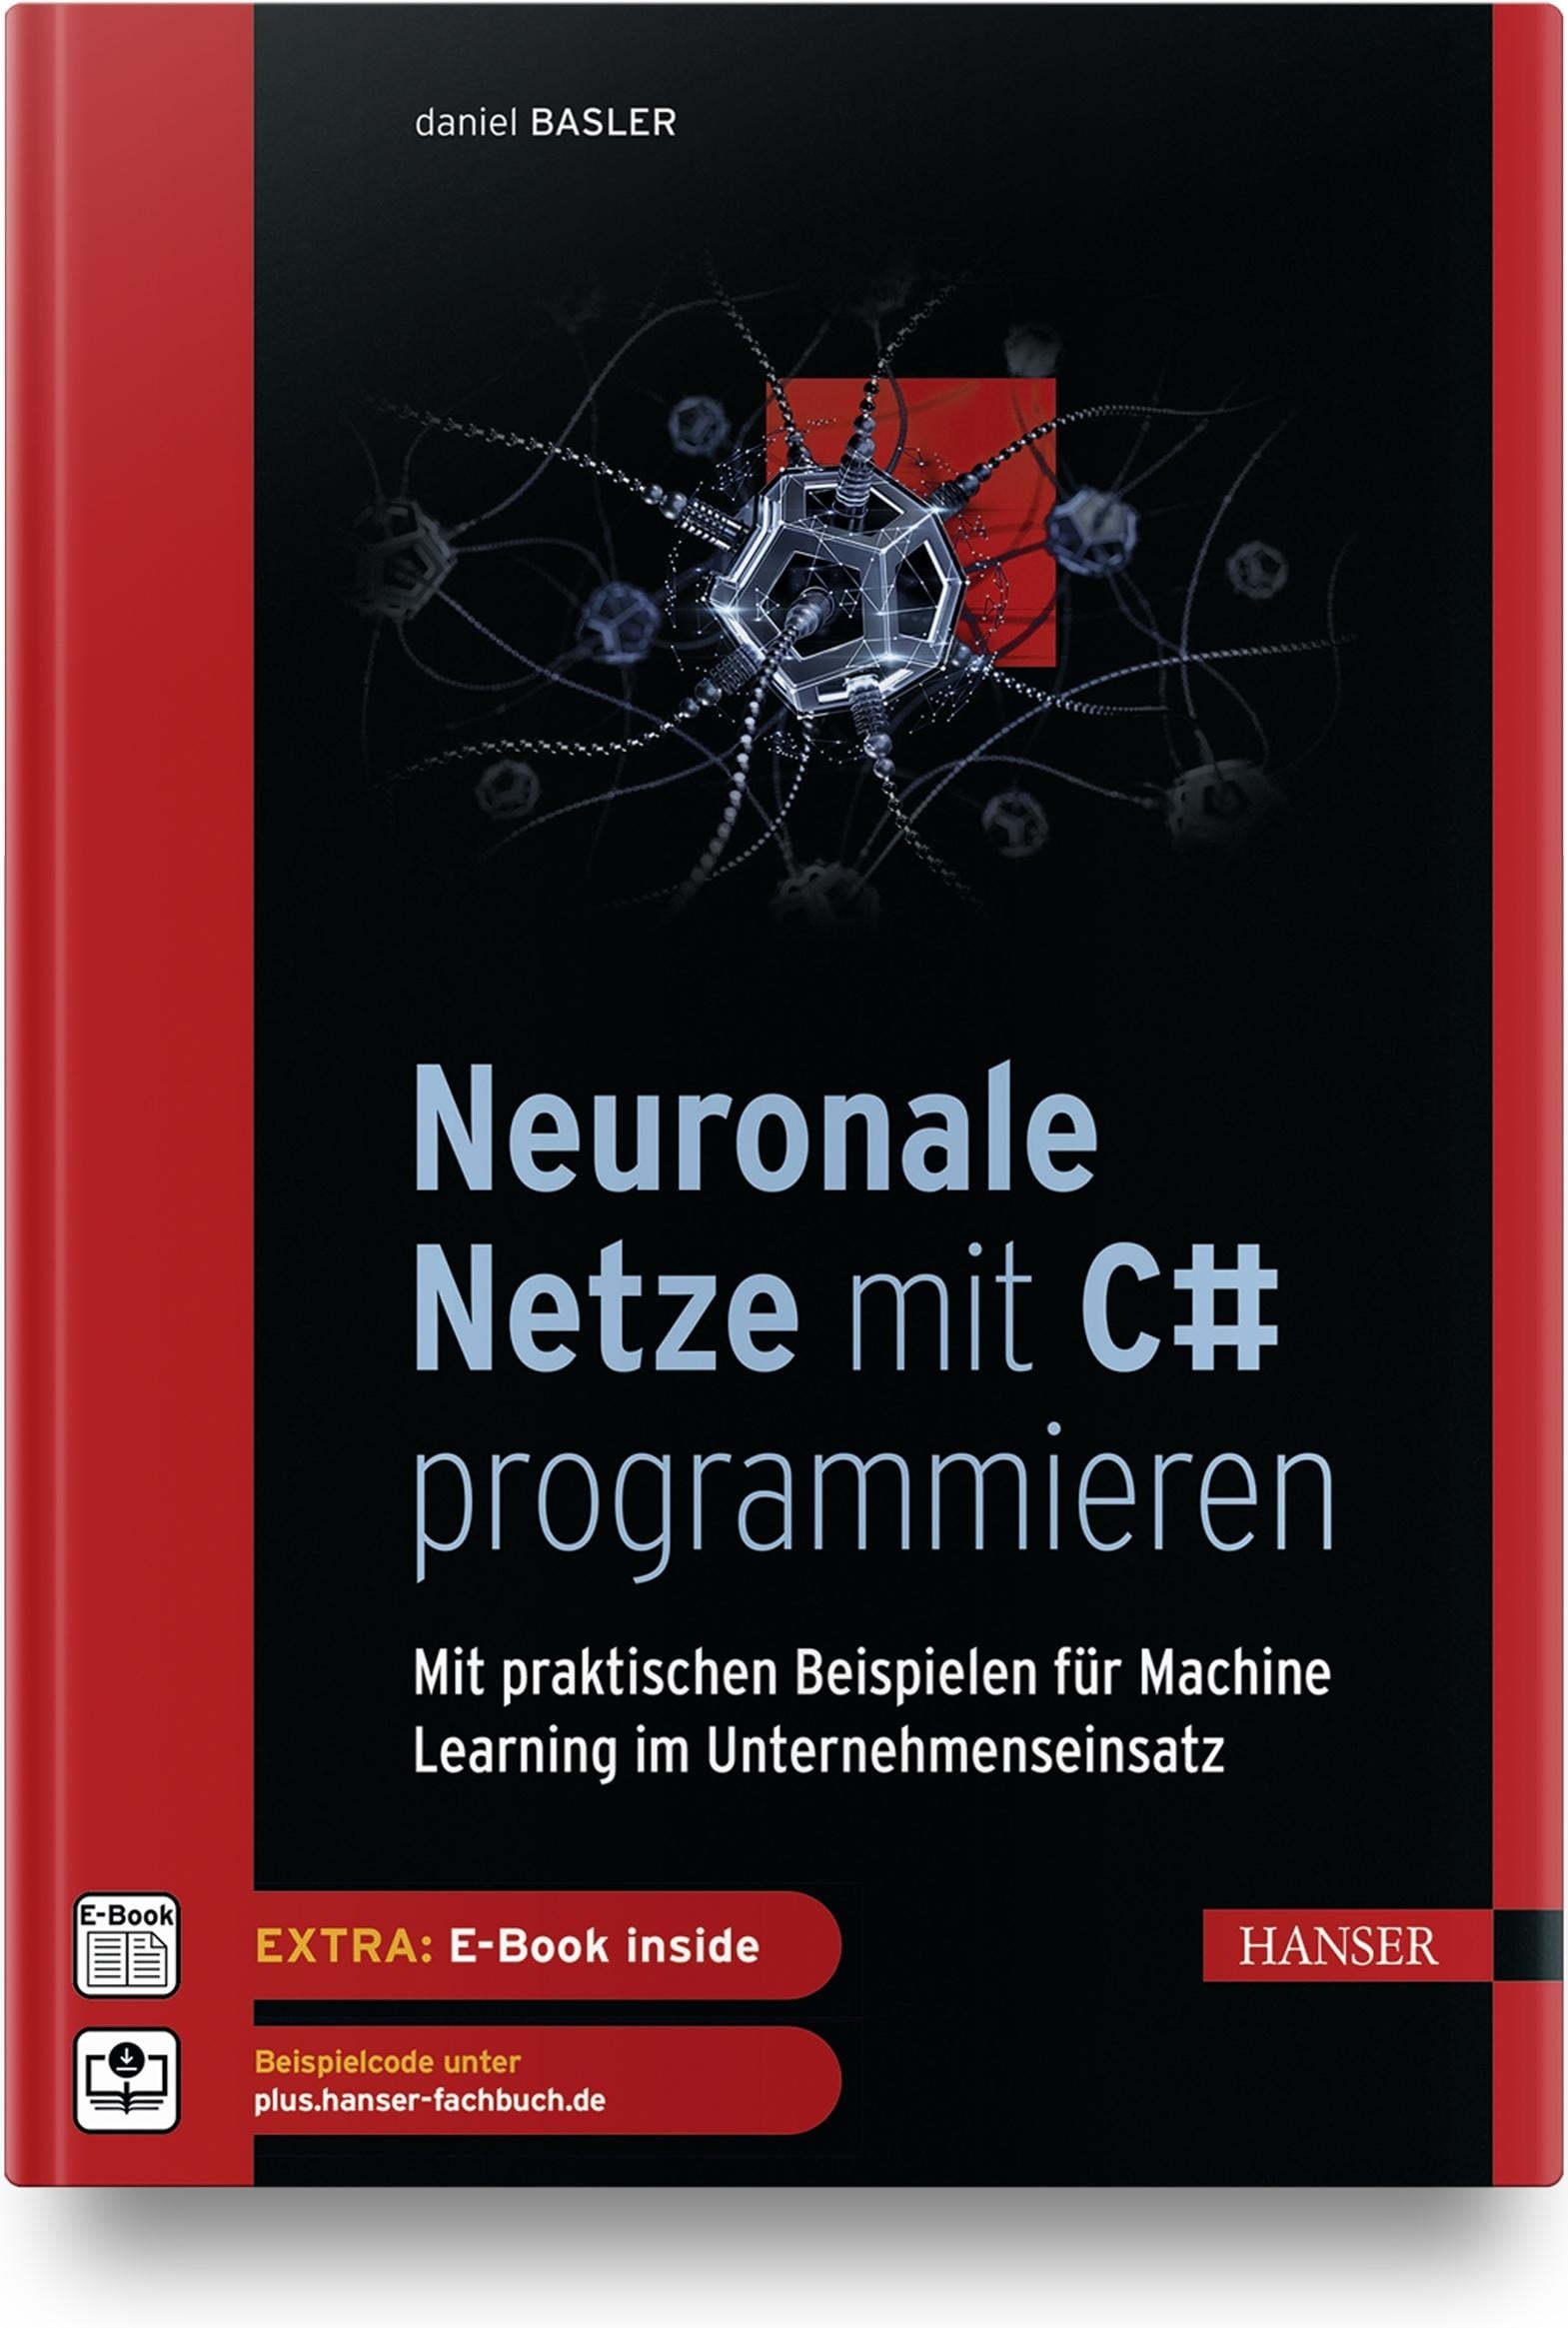 Neuronale Netze mit C# programmieren, Fachbücher von Daniel Basler